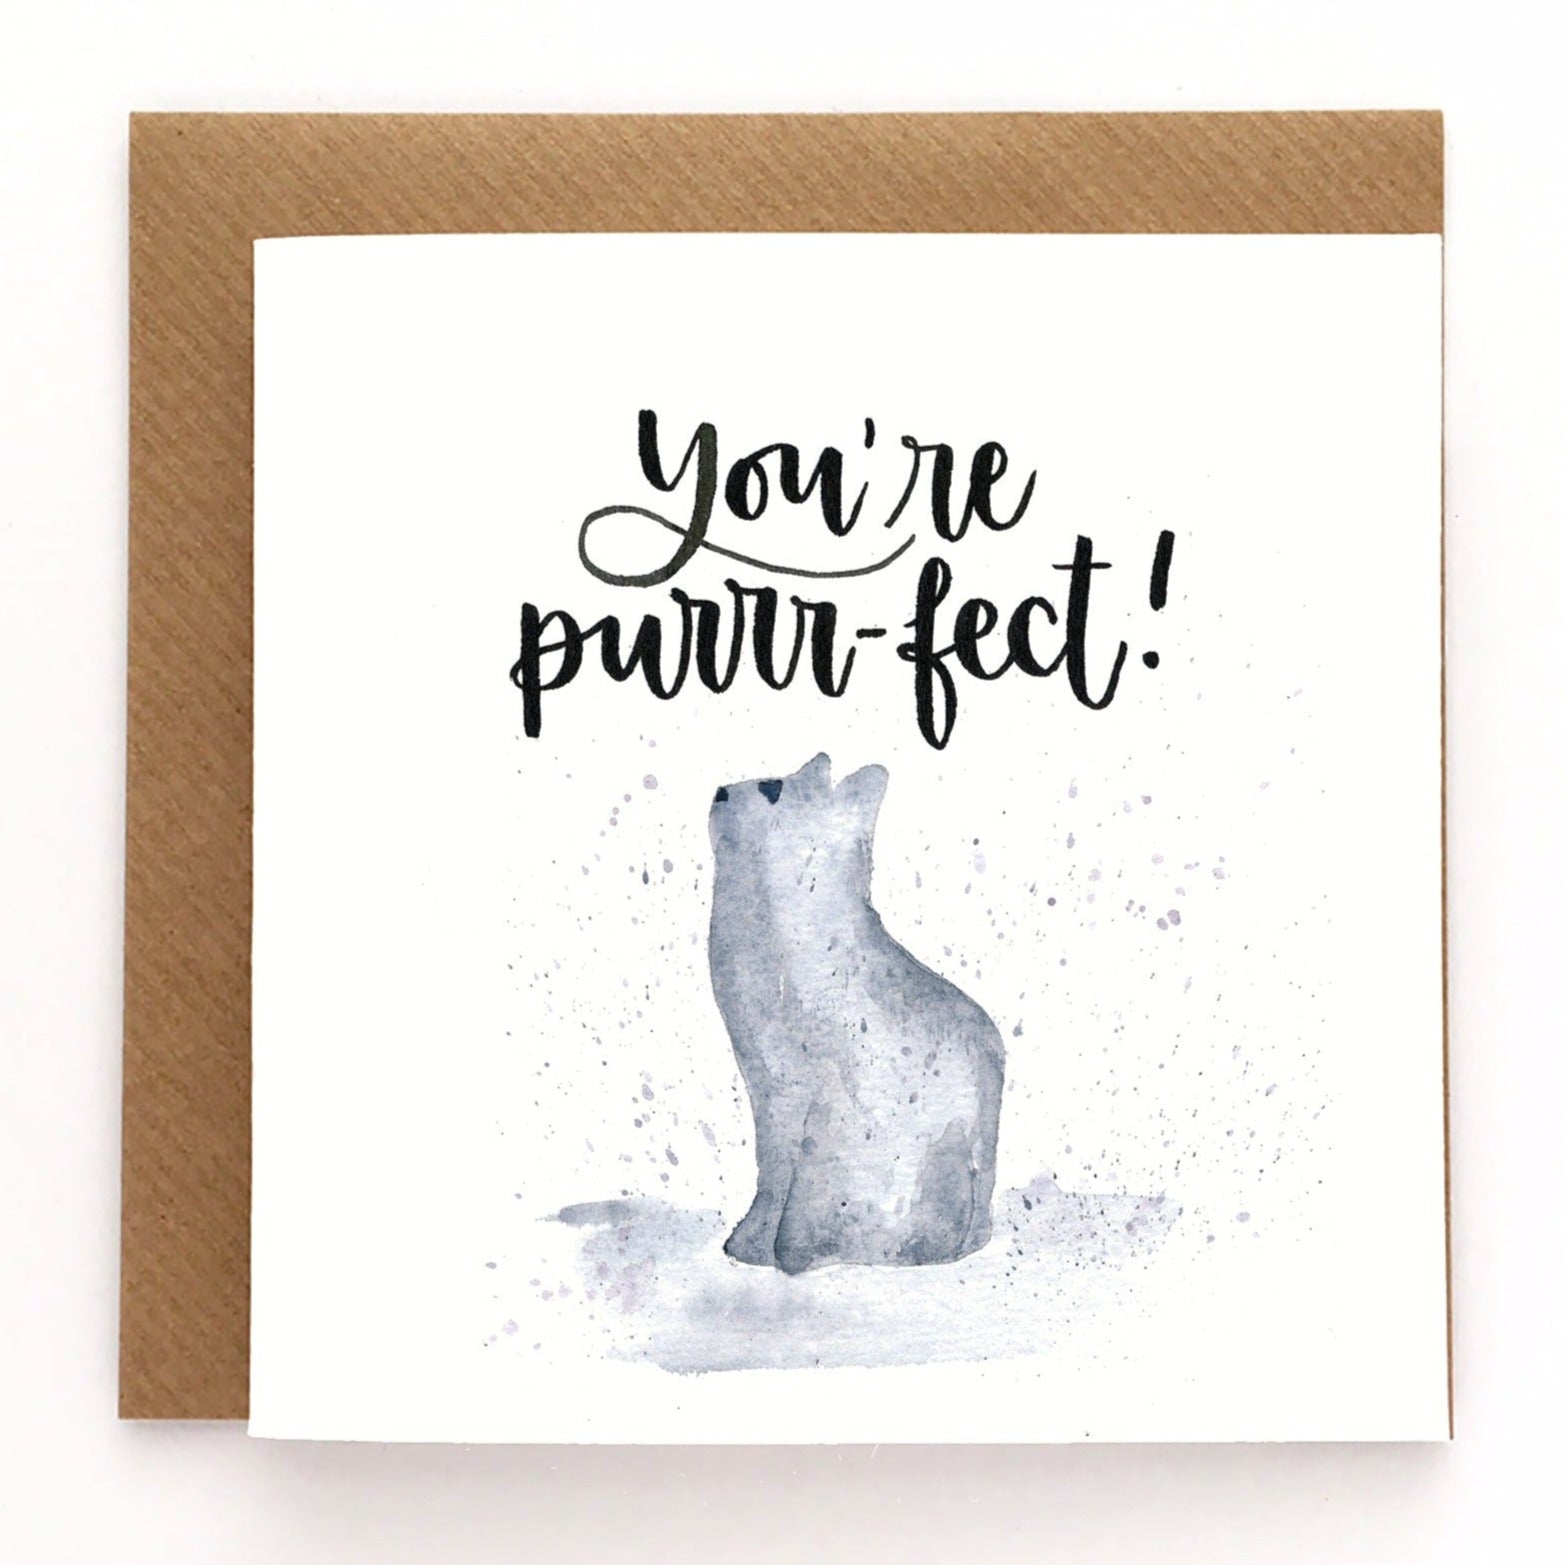 Cute Valentine's card - You're purrr-fect